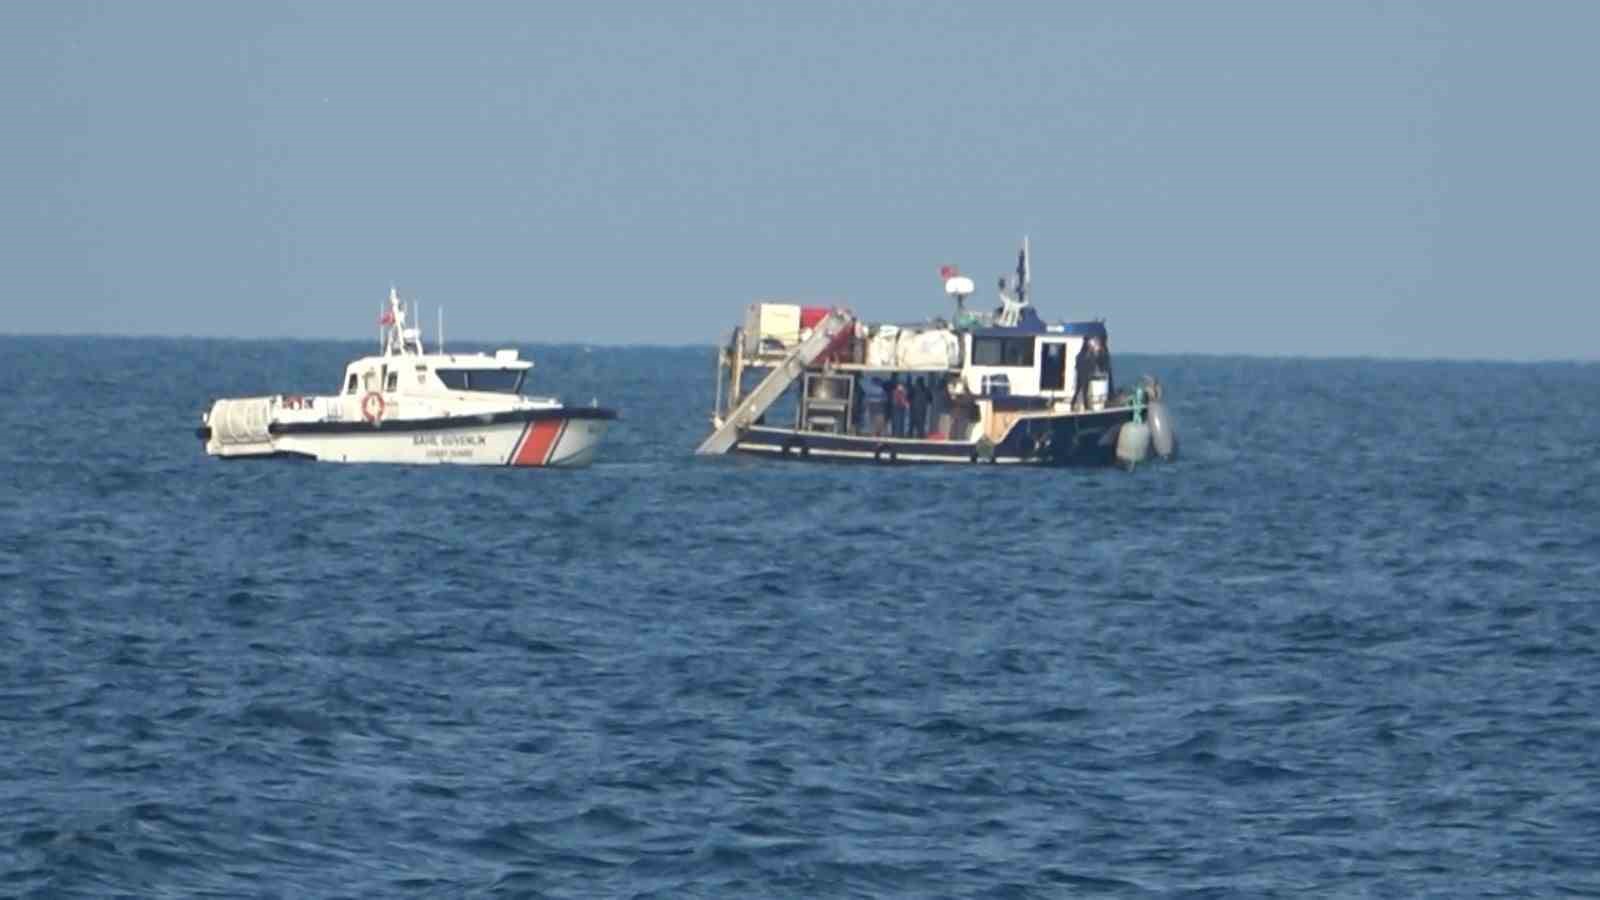 Marmara Denizinde Kayıp Mürettebata Ait Olduğu Düşünülen Cansız Beden Bulundu